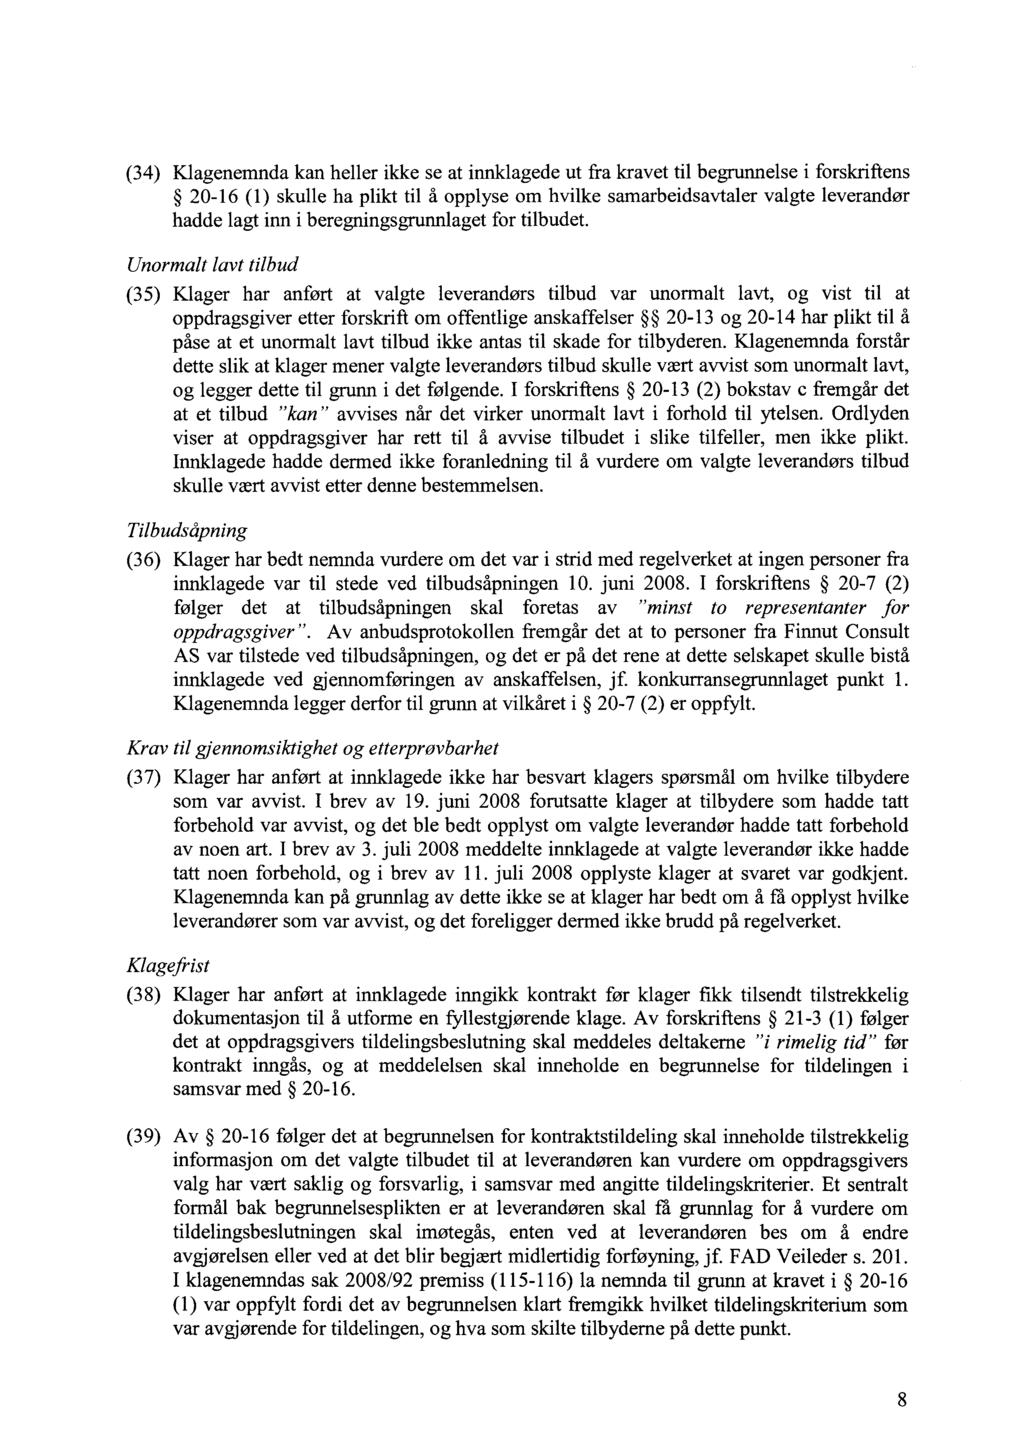 (34) Klagenemnda kan heller ikke se at innklagede ut fra kravet til begrunnelse i forskriftens 20-16 (1) skulle ha plikt til å opplyse om hvilke samarbeidsavtaler valgte leverandør hadde lagt inn i